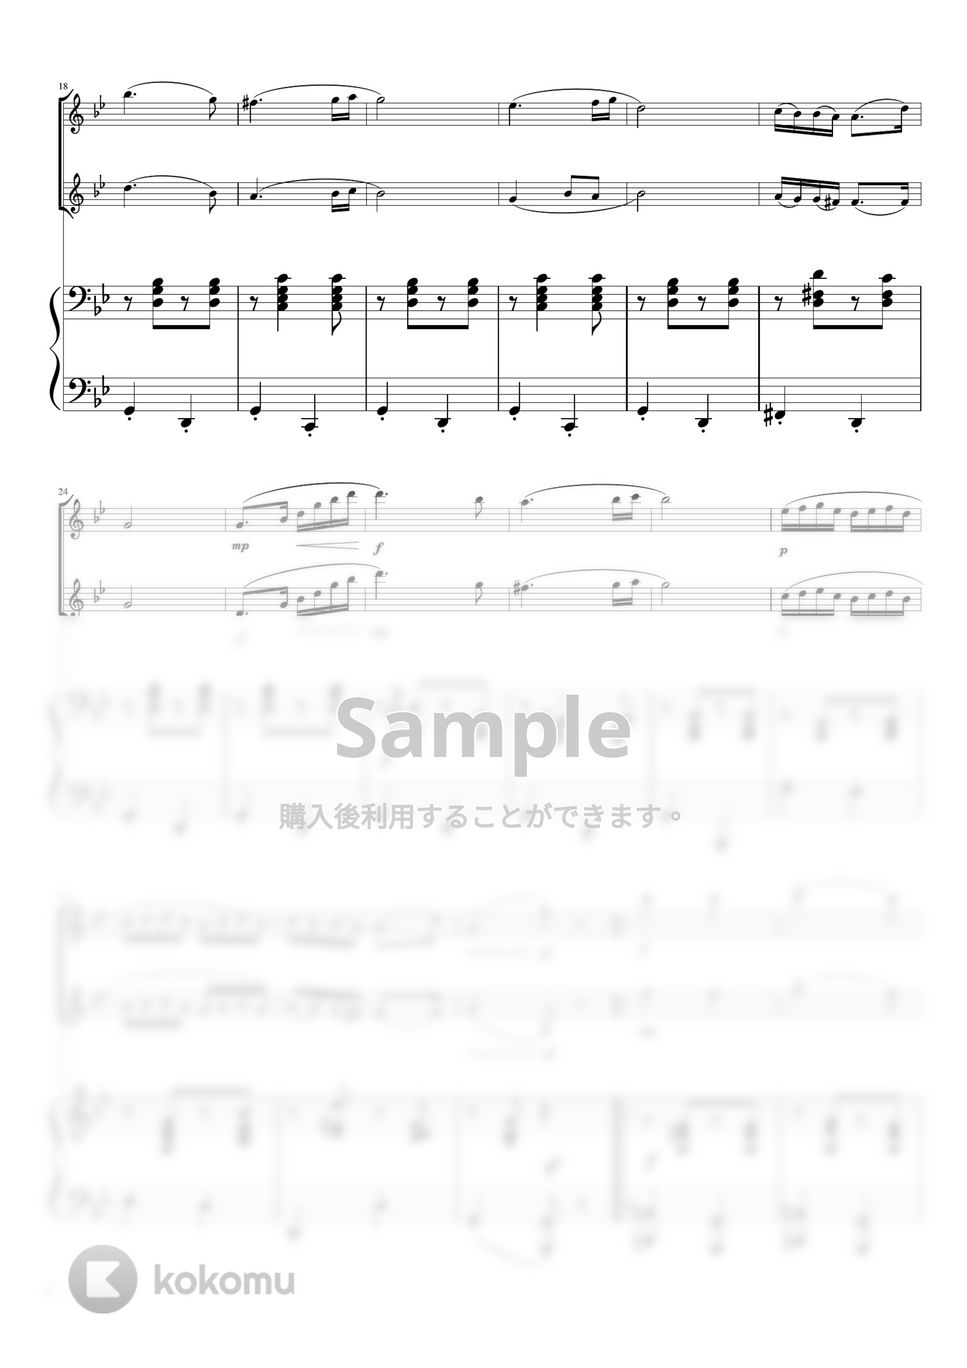 ブラームス - ハンガリー舞曲第5番 (ピアノトリオ(フルートバイオリン)) by pfkaori